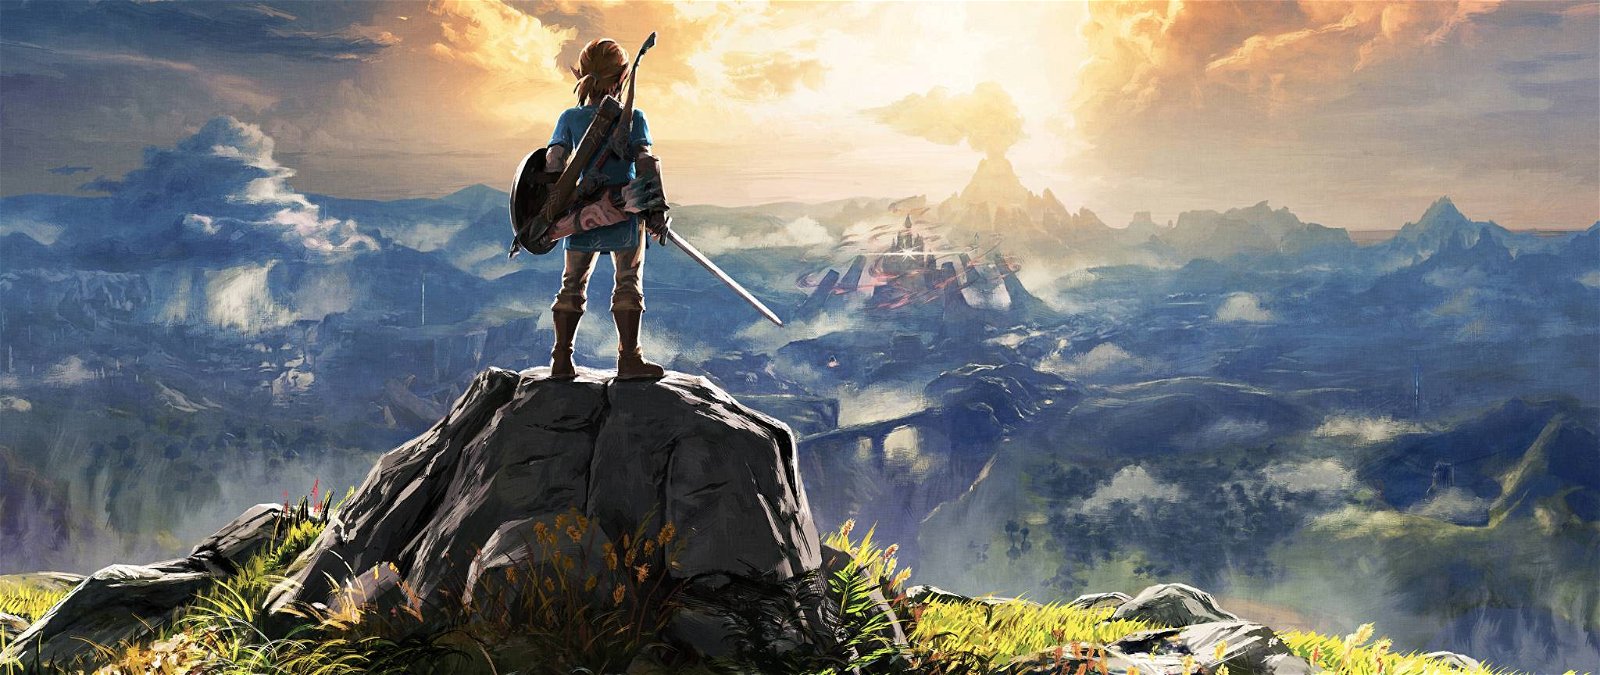 Immagine di The Legend Of Zelda sarà una nuova serie TV Netflix?